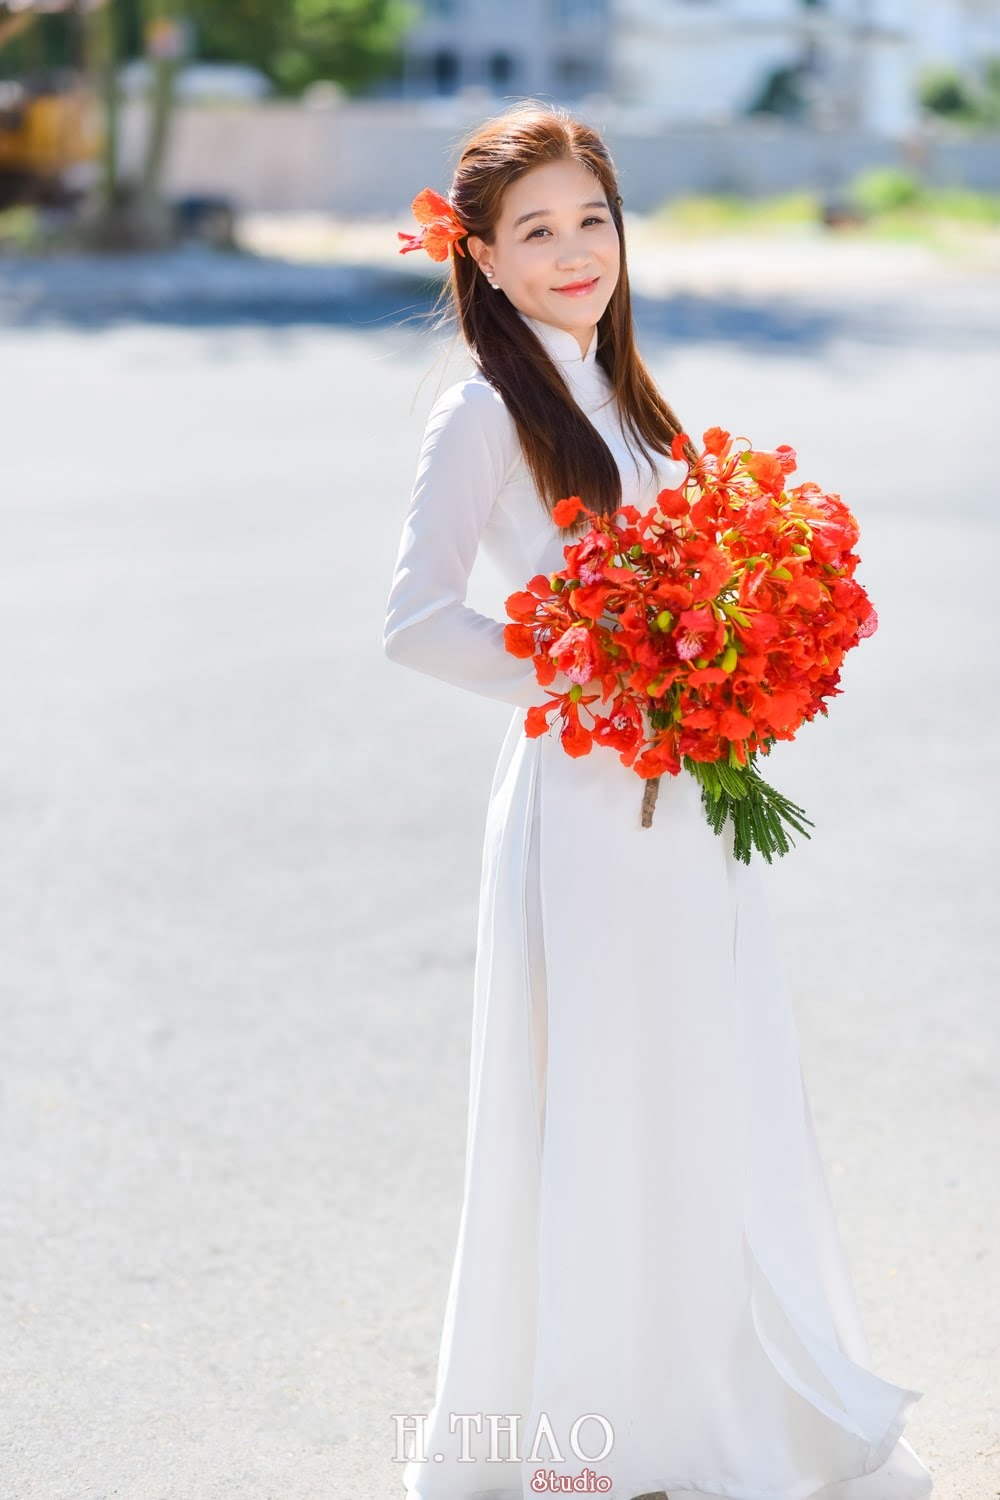 Anh hoa phuong 17 min - Tổng hợp concept chụp ảnh với hoa phượng tháng 5 đẹp – HThao Studio